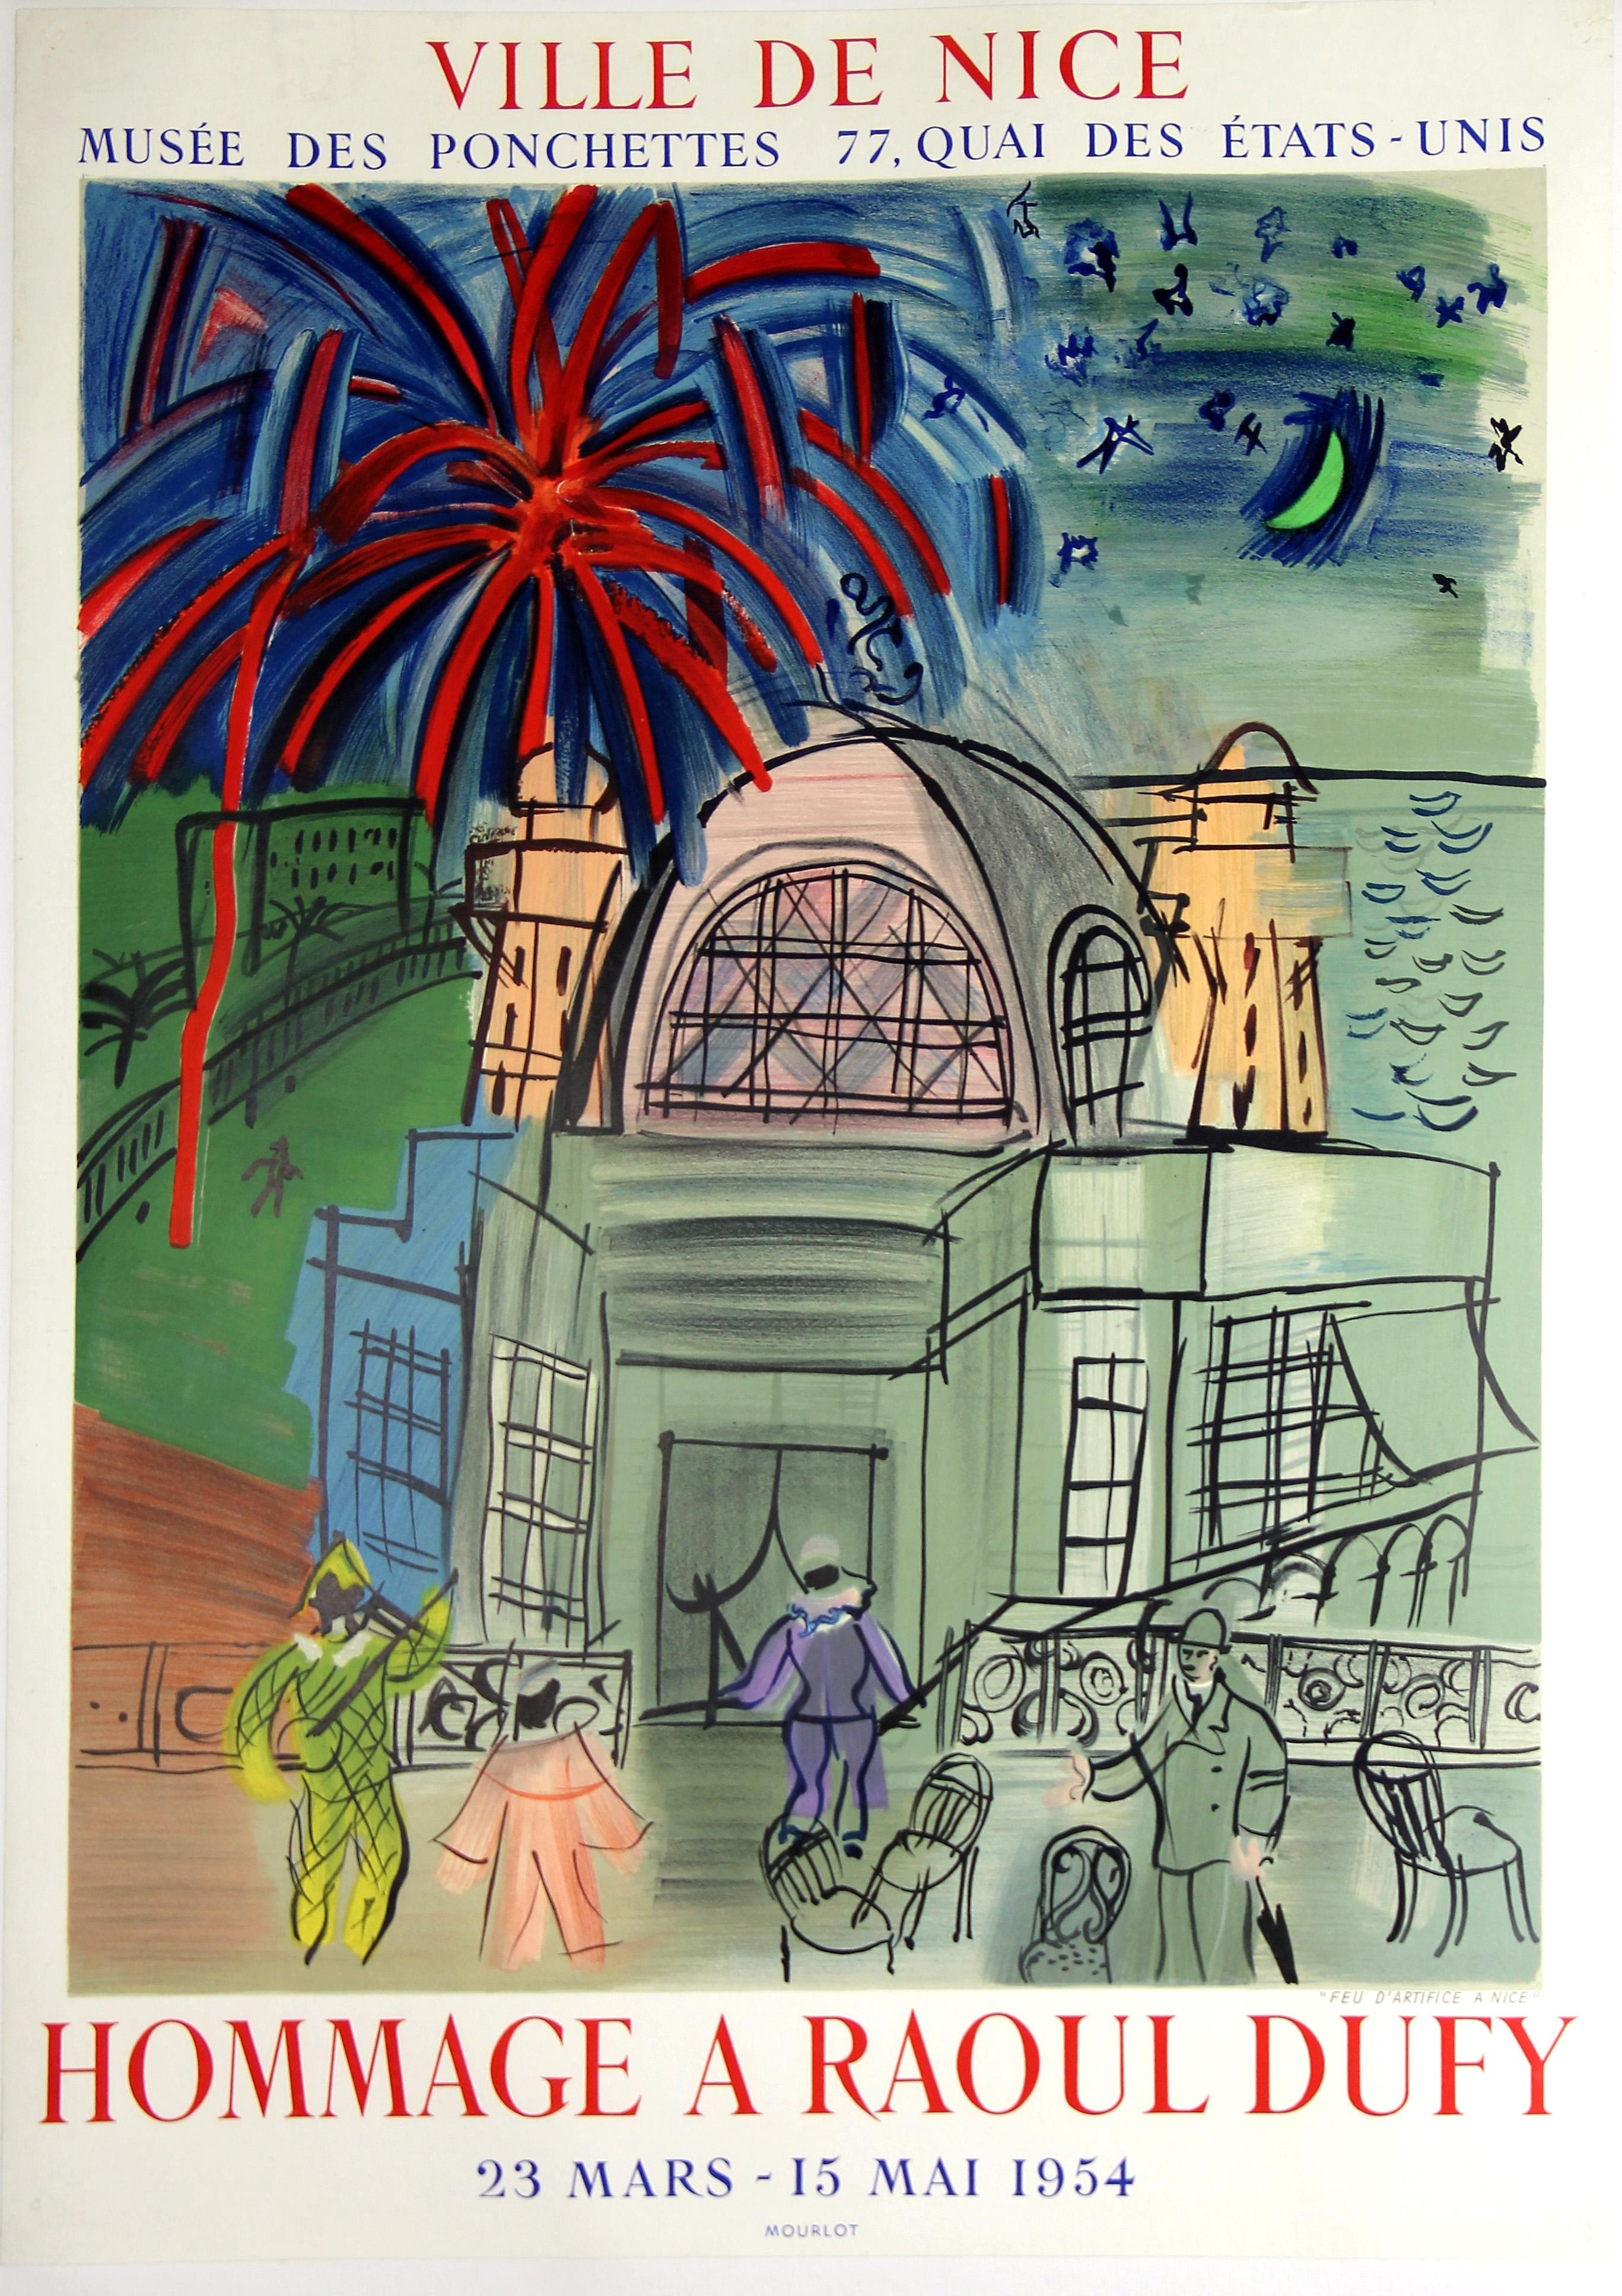 Affiche lithographique vintage de Raoul Dufy créée pour une exposition au Musée des Ponchettes, Nice. Imprimé par Mourlot, Paris.

Artiste : (d'après) Raoul Dufy 

Année : 1954

Médium : Poster lithographique

Edition : Inconnu

Catalogue